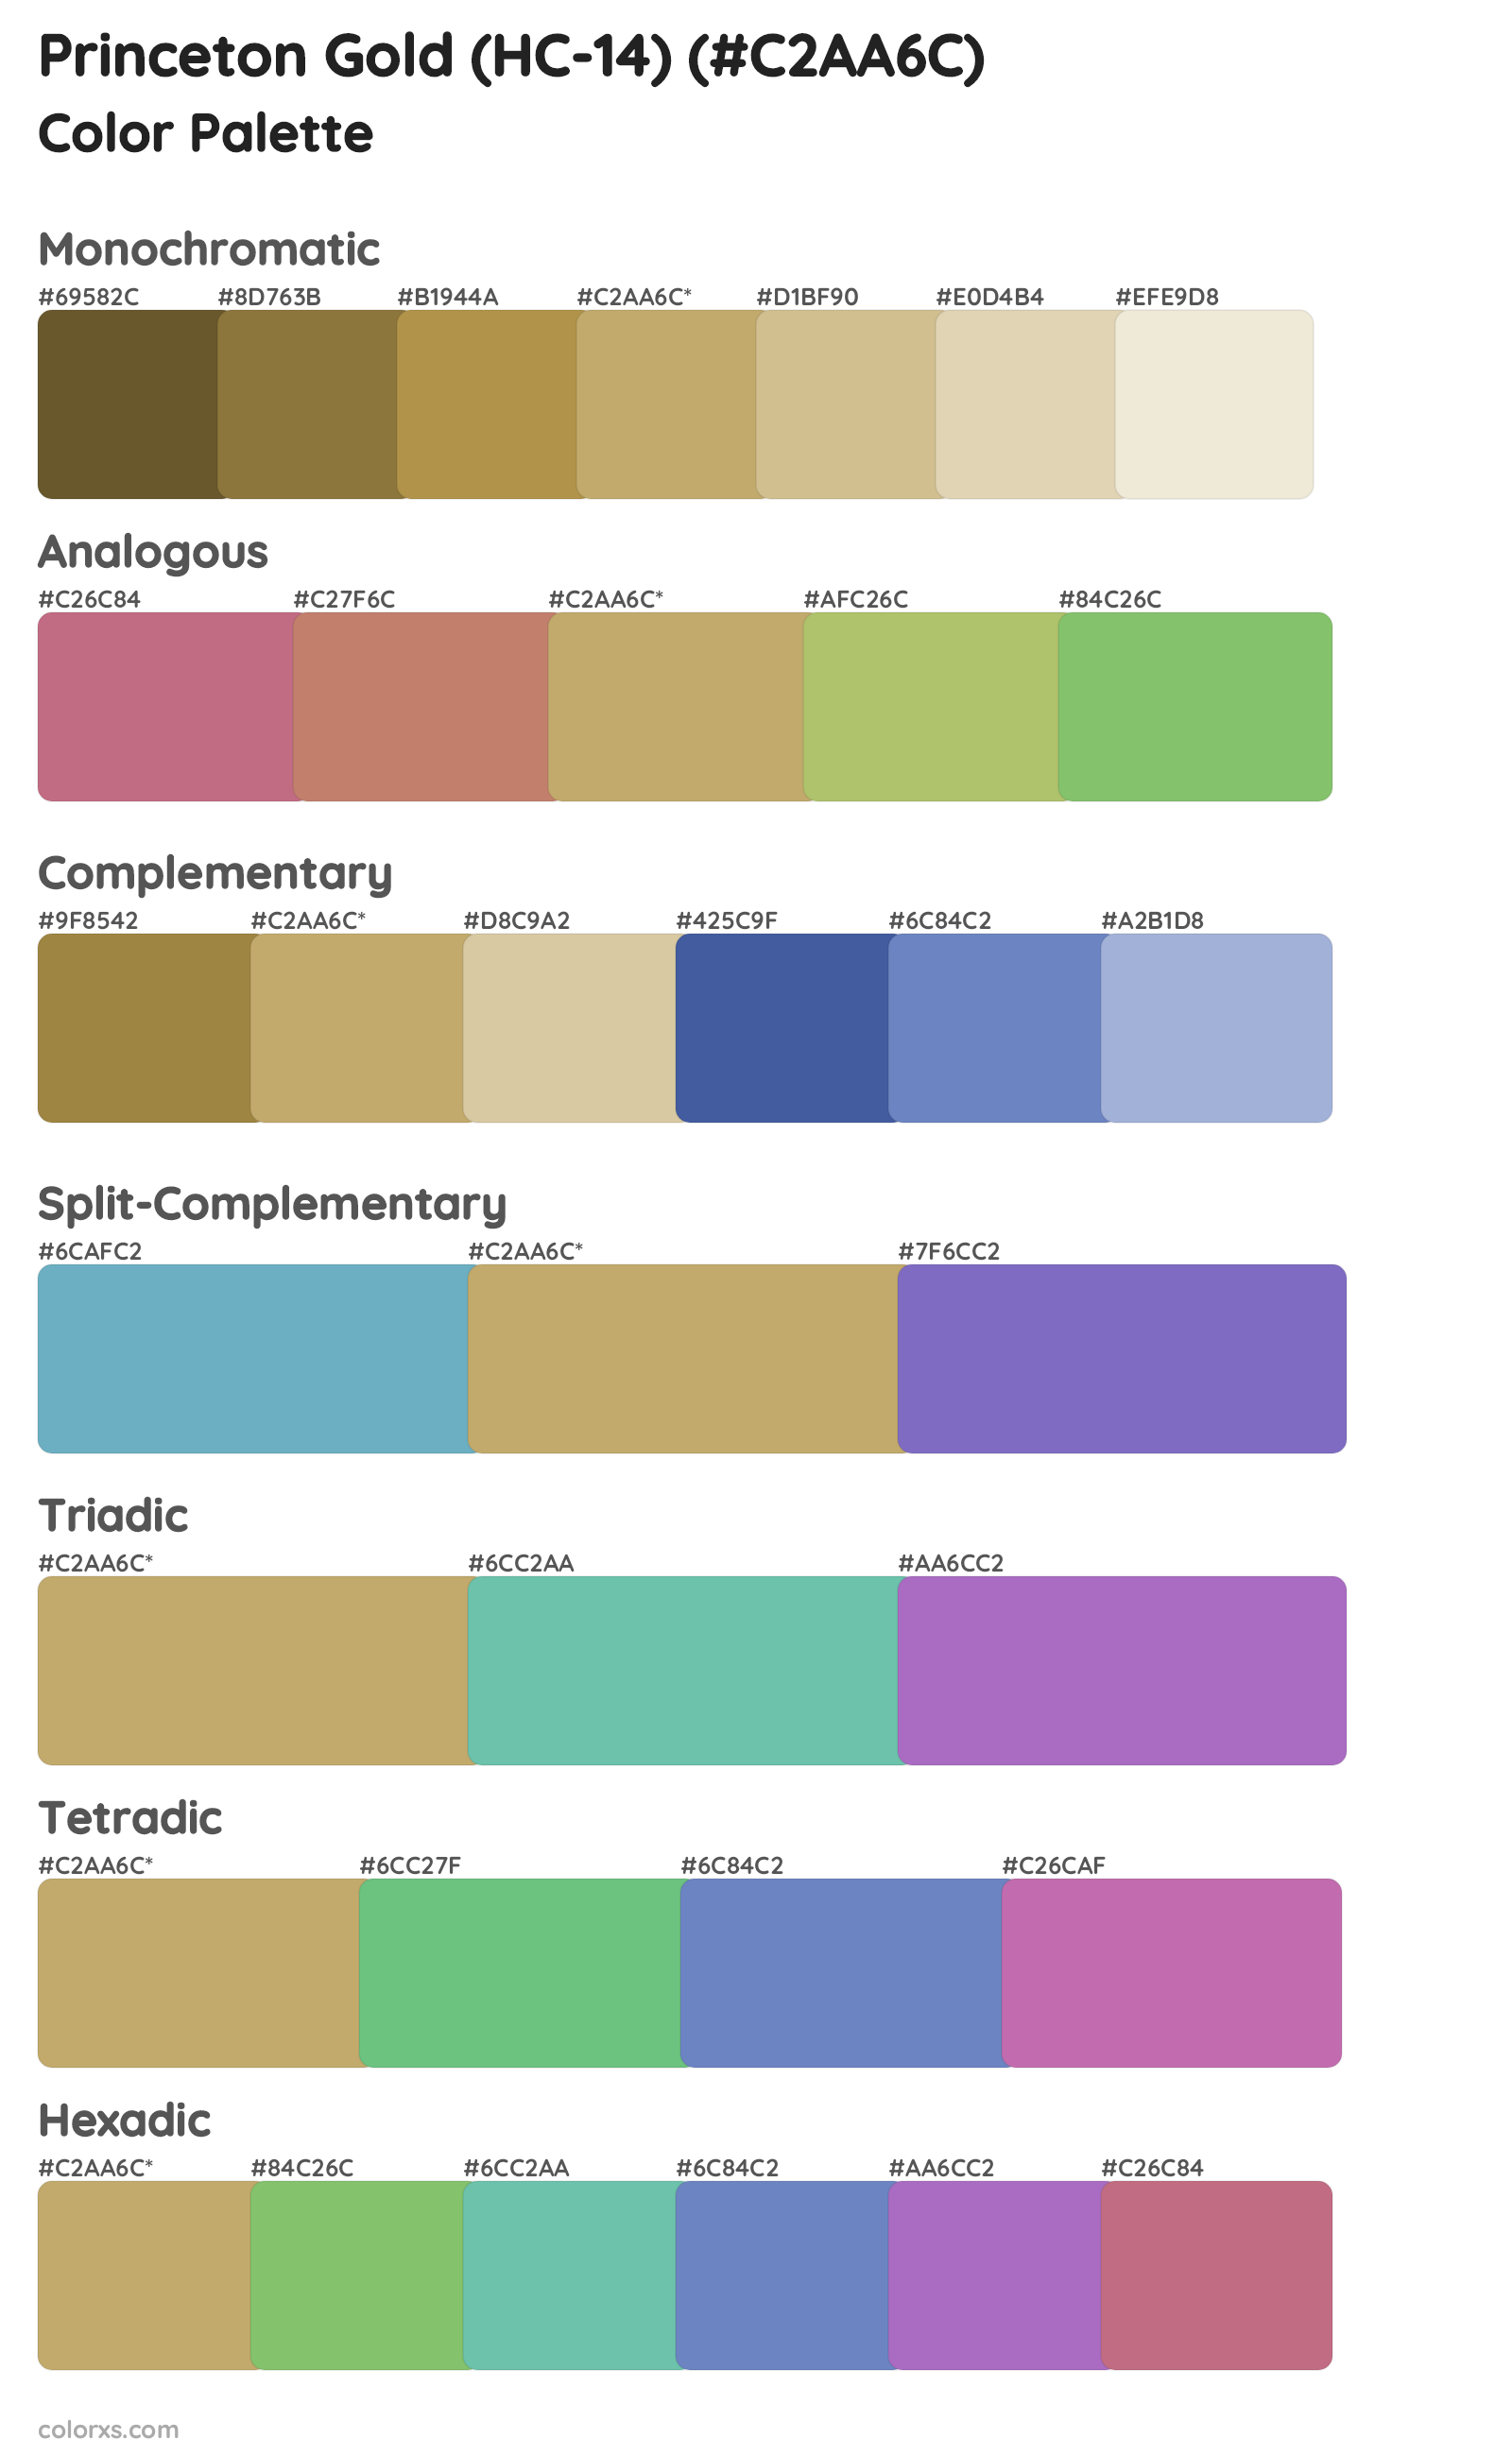 Princeton Gold (HC-14) Color Scheme Palettes